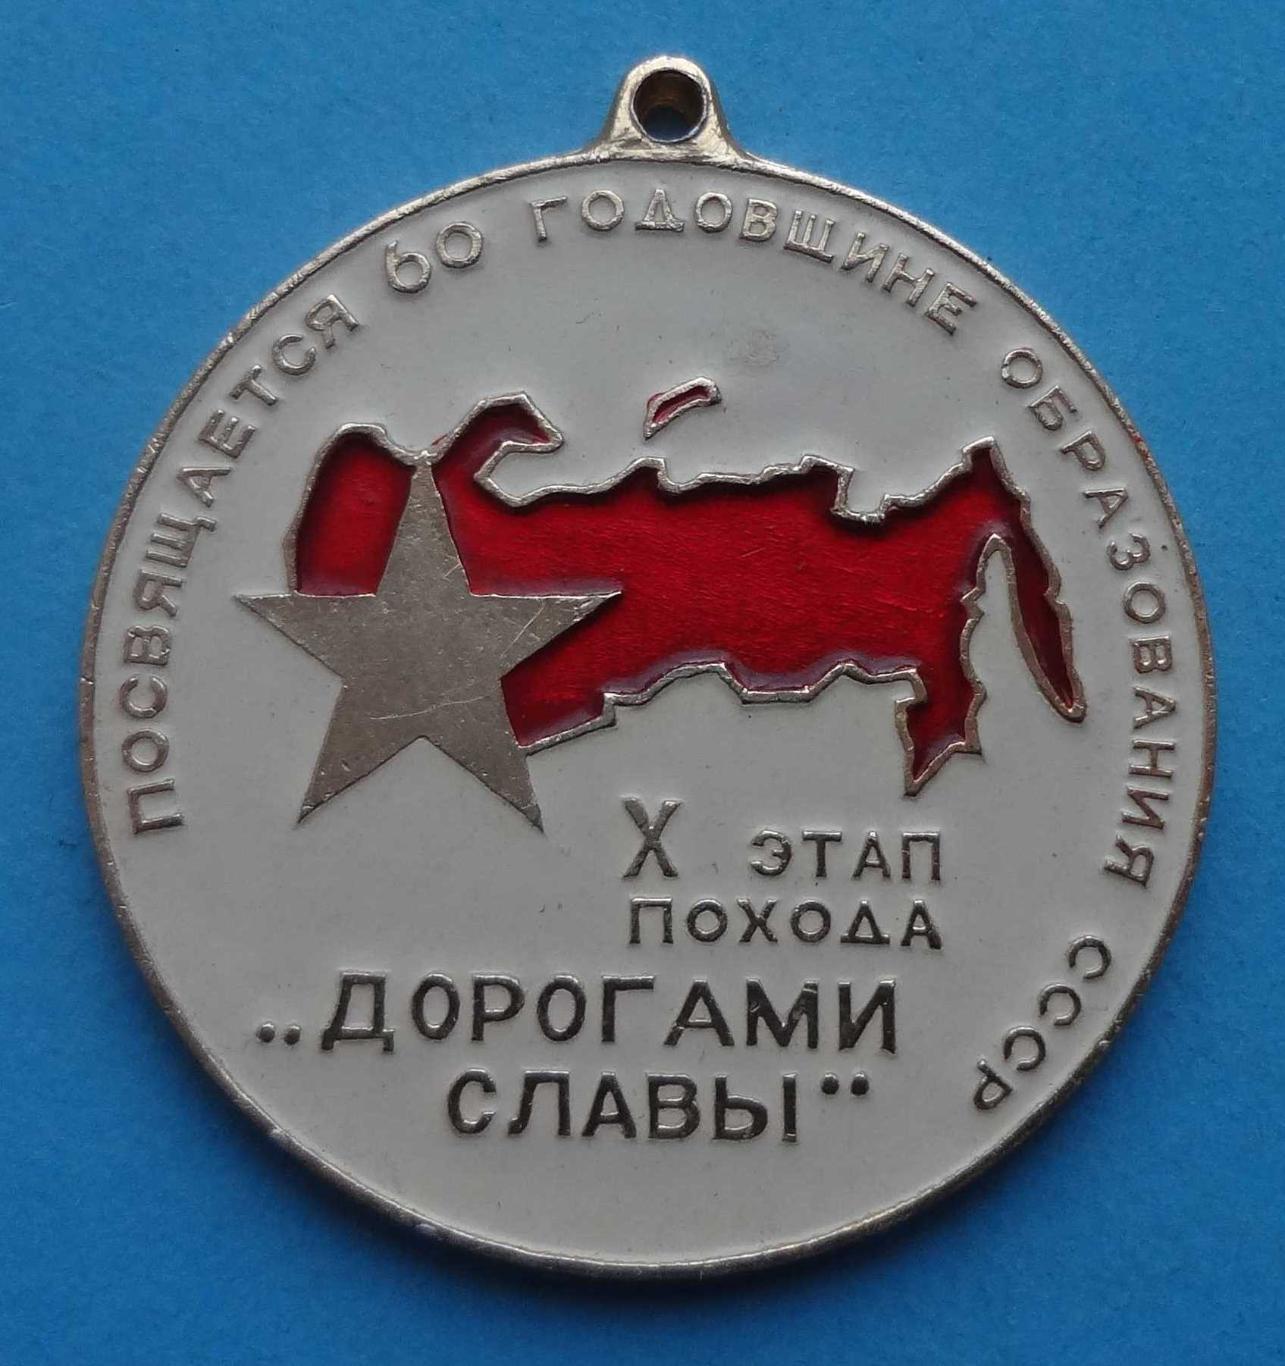 10 этап похода Дорогами славы Посвящается 60 годовщине образования СССР ВЛКСМ 15